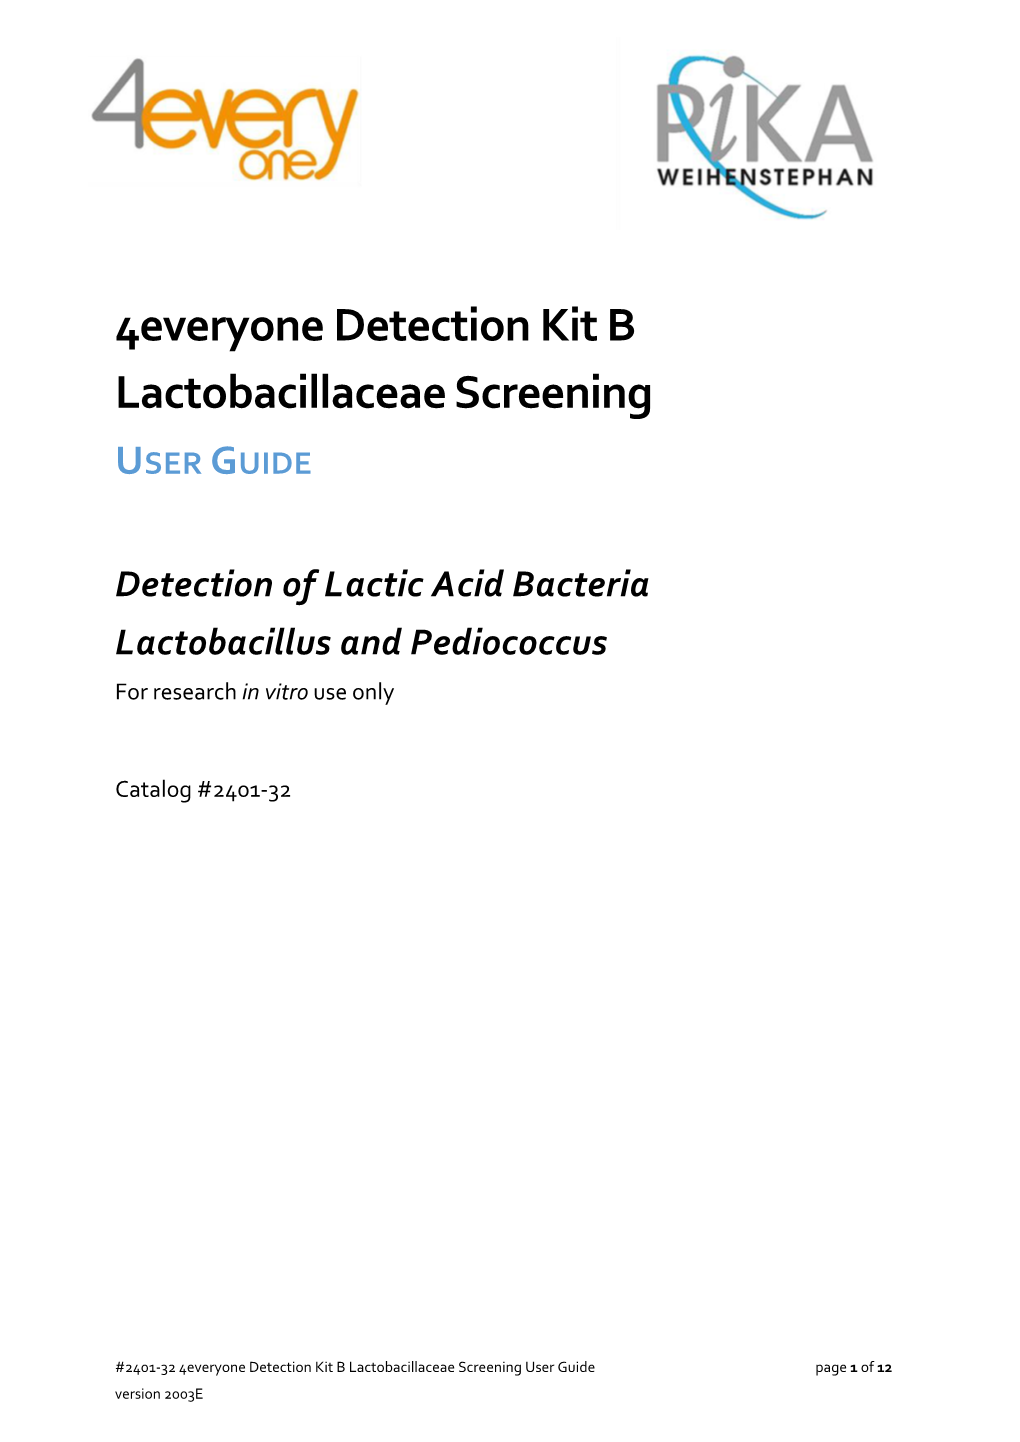 Manual 2401-32 4Everyone Detection Kit B Lactobacillaceae Screening